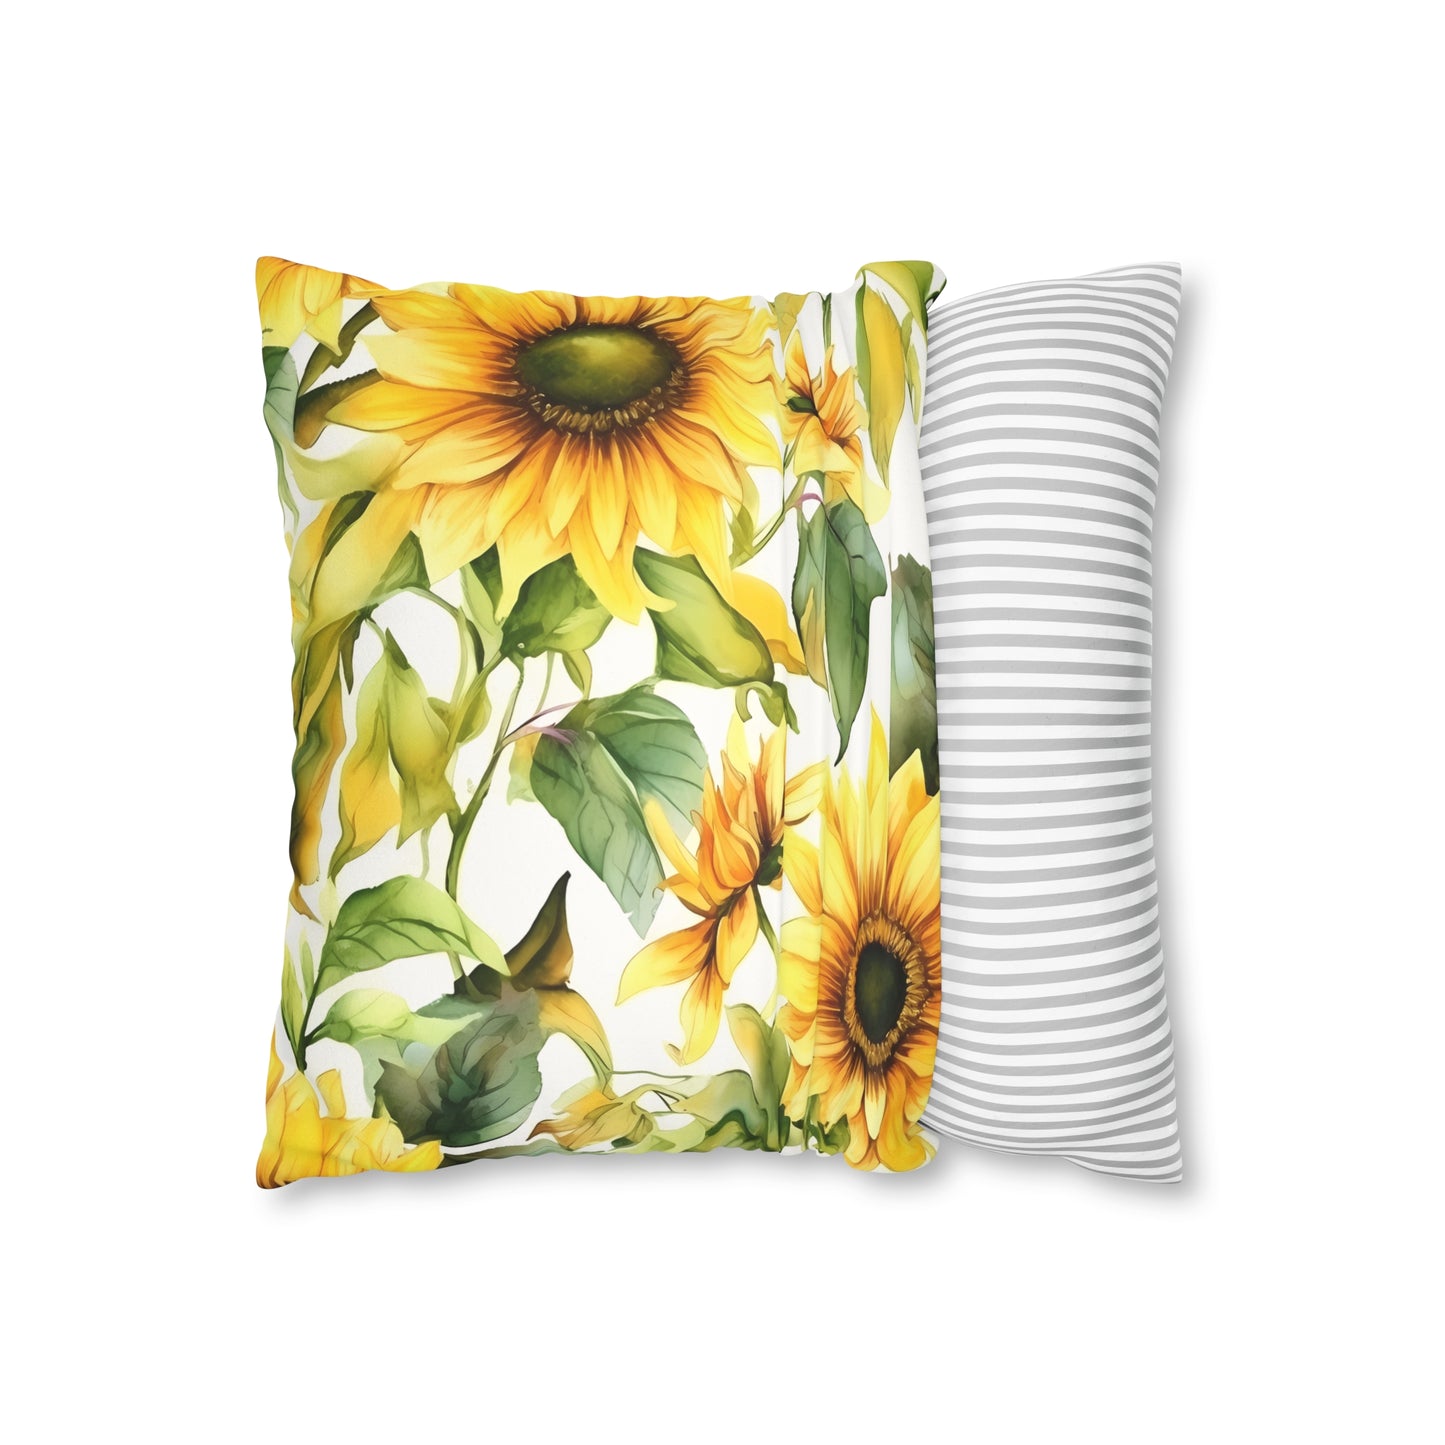 Sunflower Pillowcase / Summer Sunflower Decor